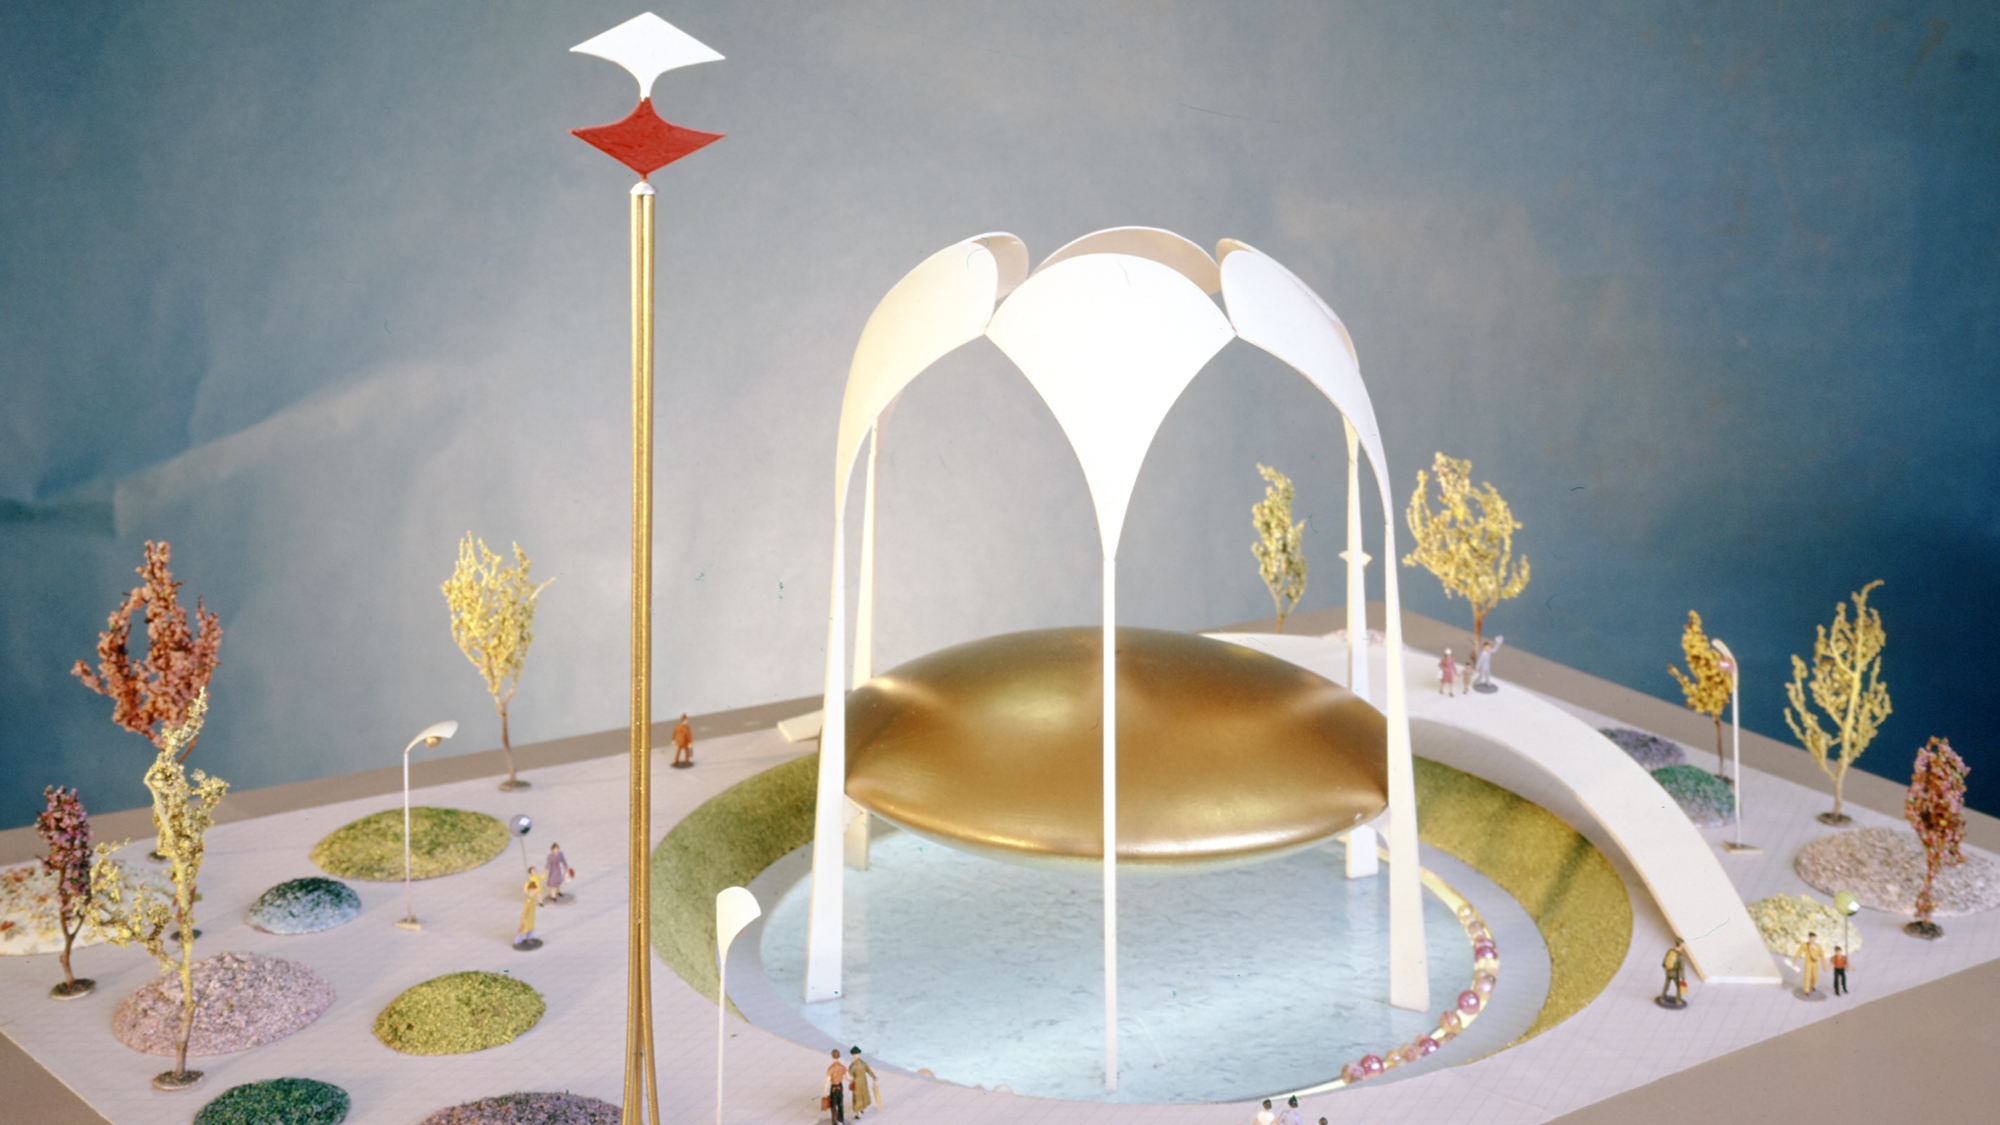 1964’teki Dünya Fuarı’ndaki Johnson Wax Eğlence Çadırı’nın Modeli